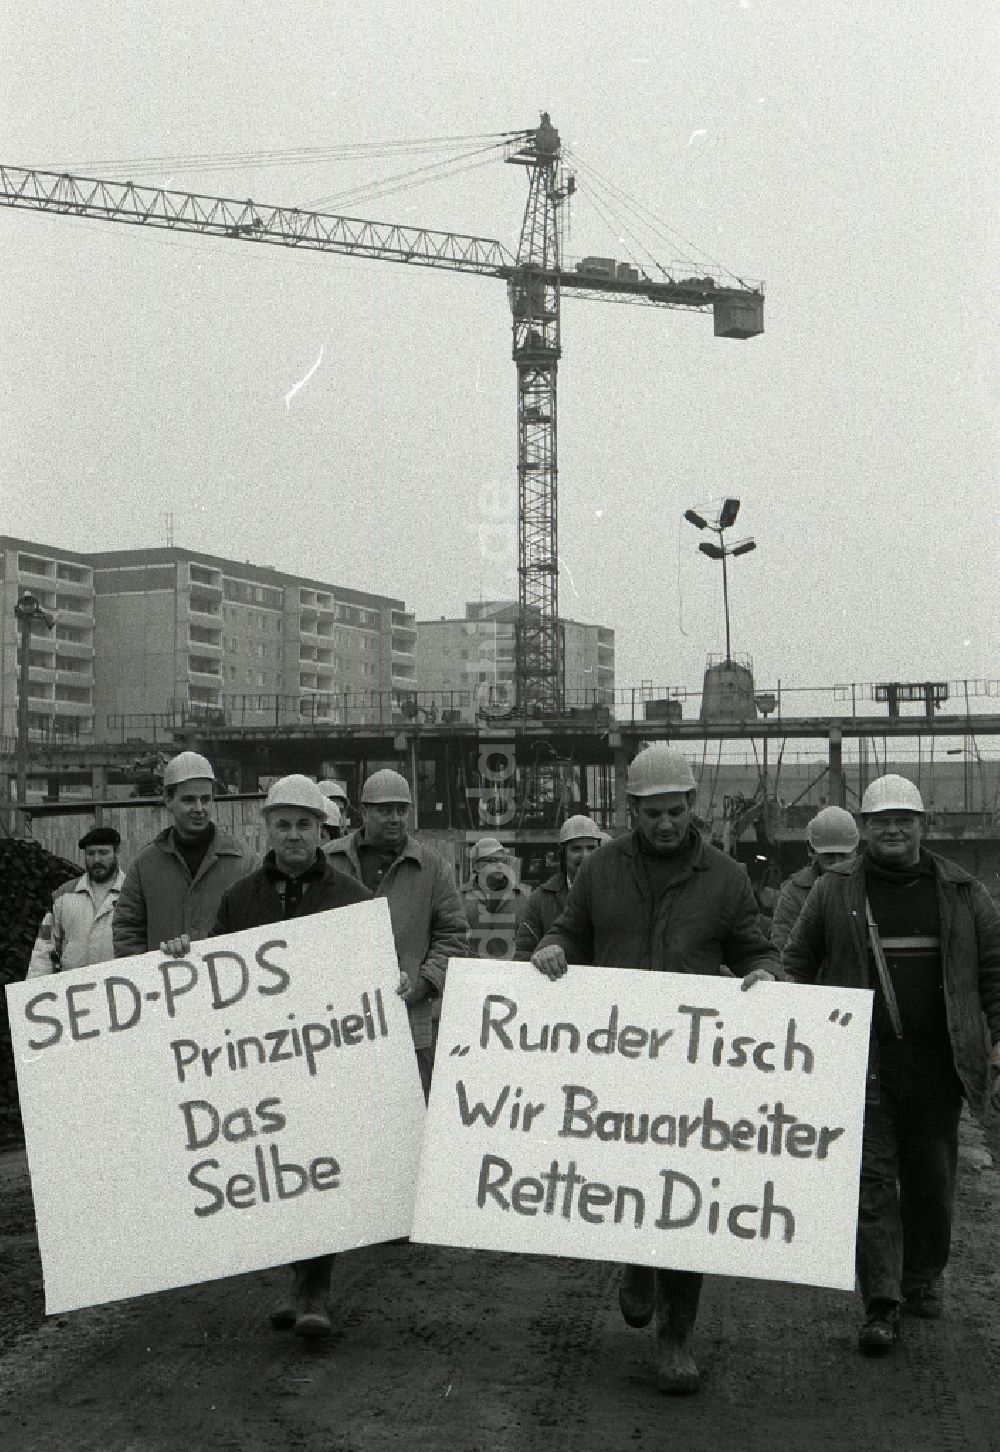 DDR-Fotoarchiv: Berlin - Transparent- Losung von Bauarbeitern im Neubauwohngebiet in Berlin auf dem Gebiet der ehemaligen DDR, Deutsche Demokratische Republik